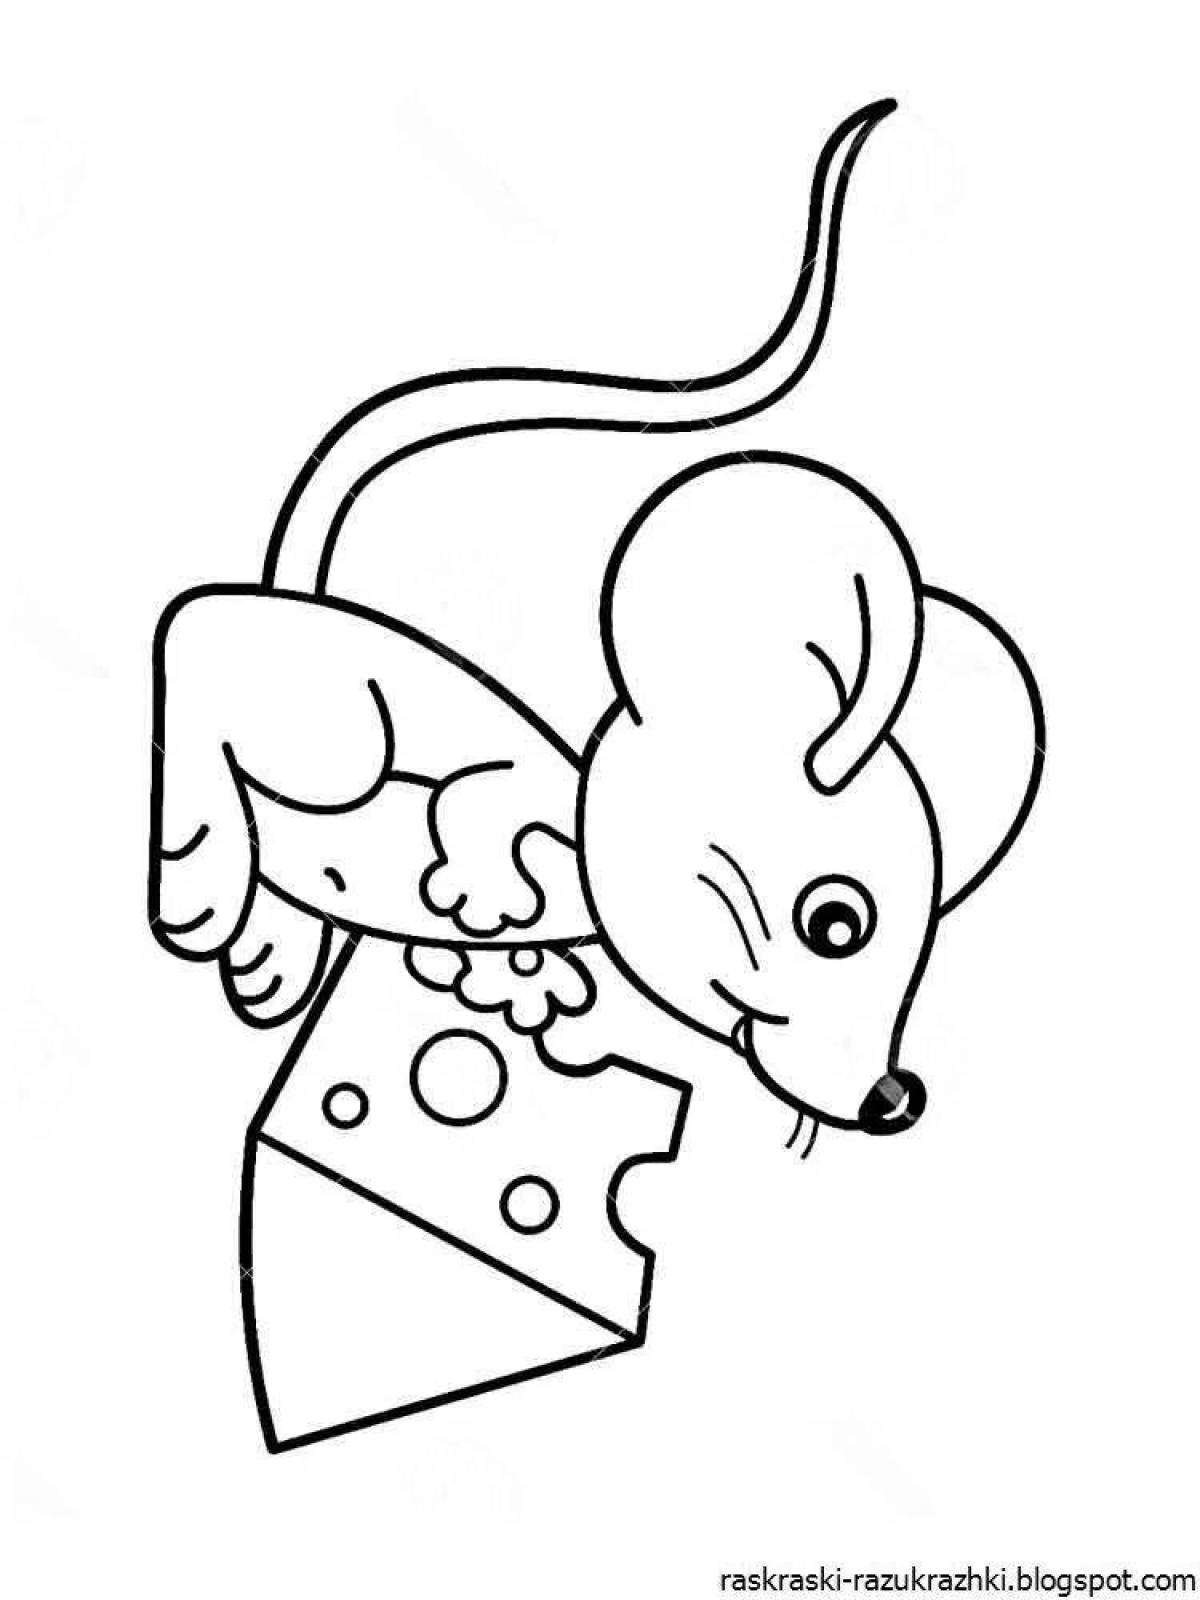 Мышка рисунок трафарет